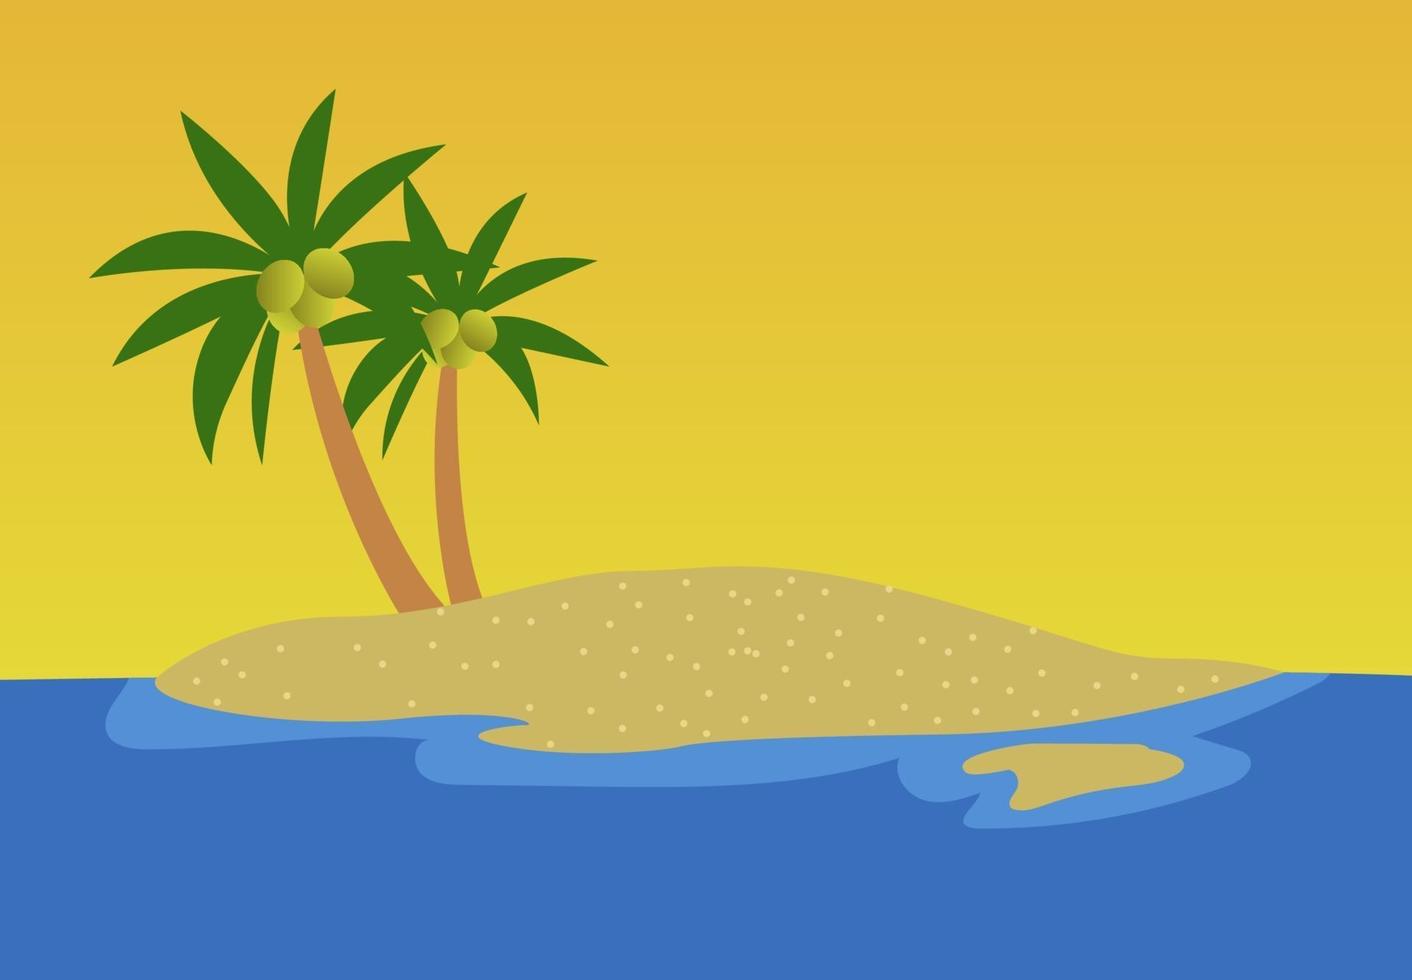 arbre palmier vecteur lever du soleil, emblème de l'île illustration vectorielle isolé, fond de vocation de mer objet plage été